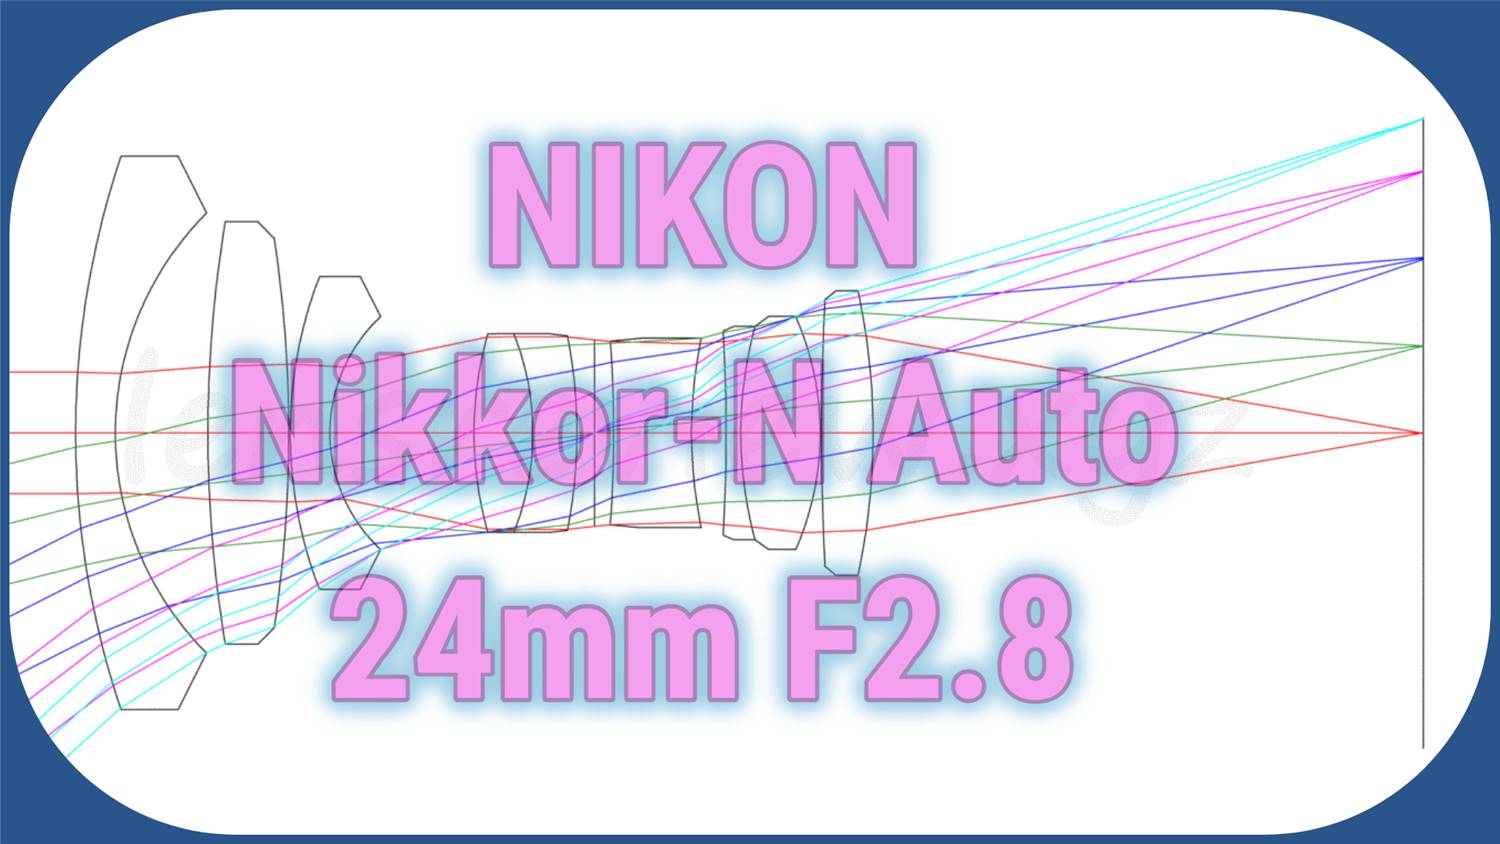 レンズ性能評価】NIKON Nikkor-N Auto 24mm F2.8 -分析082 - LENS Review